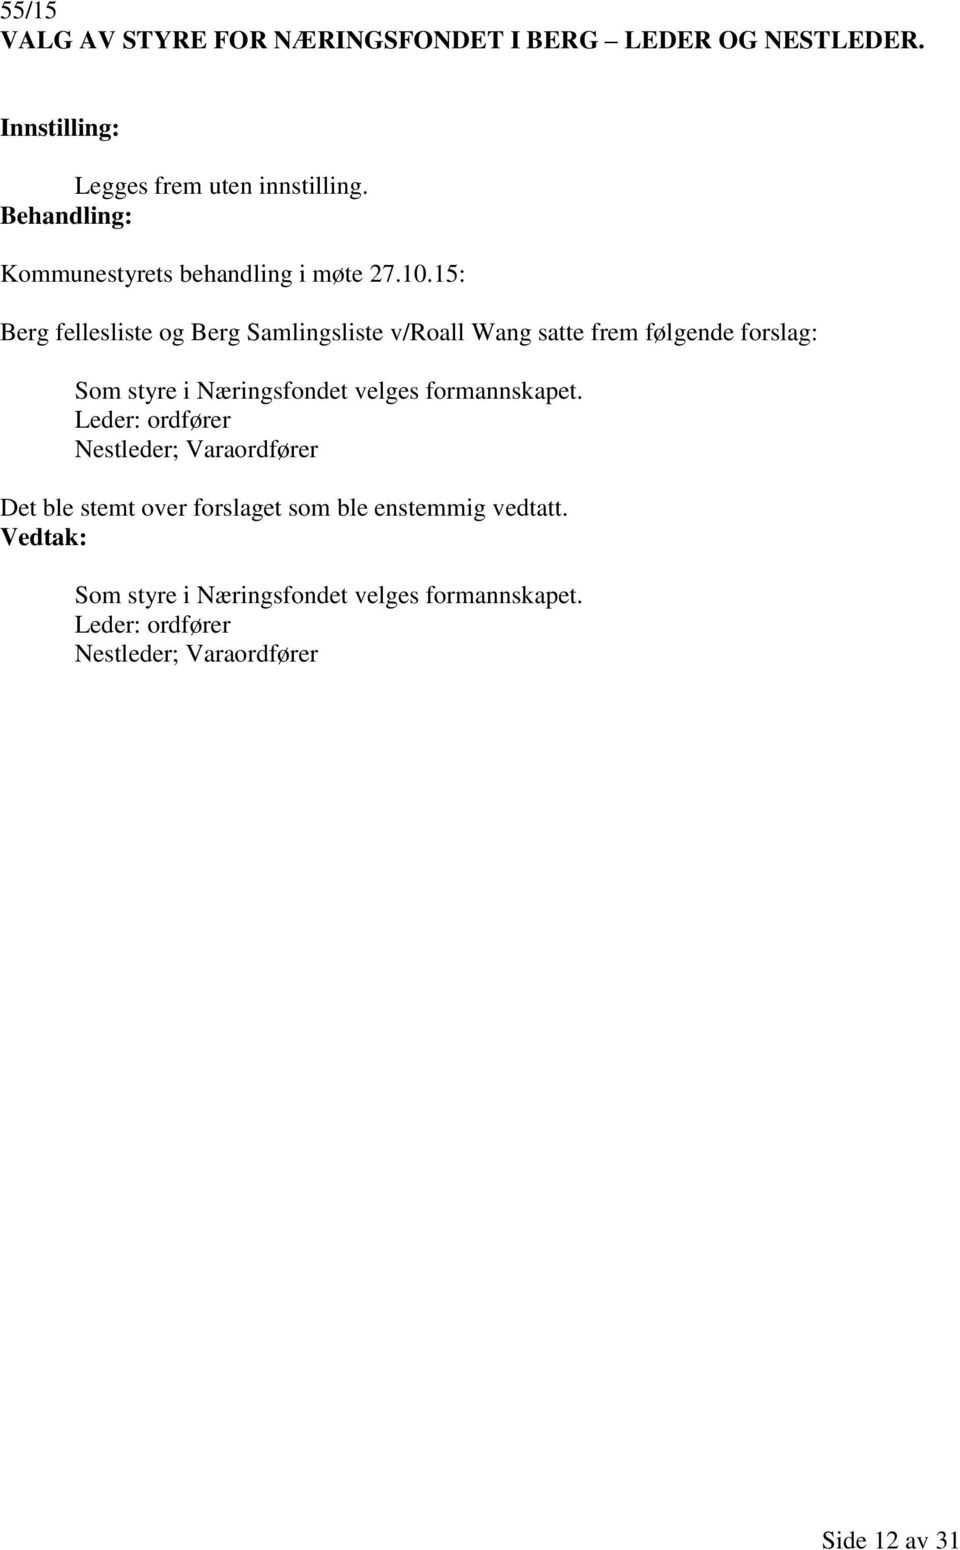 15: Berg fellesliste og Berg Samlingsliste v/roall Wang satte frem følgende forslag: Som styre i Næringsfondet